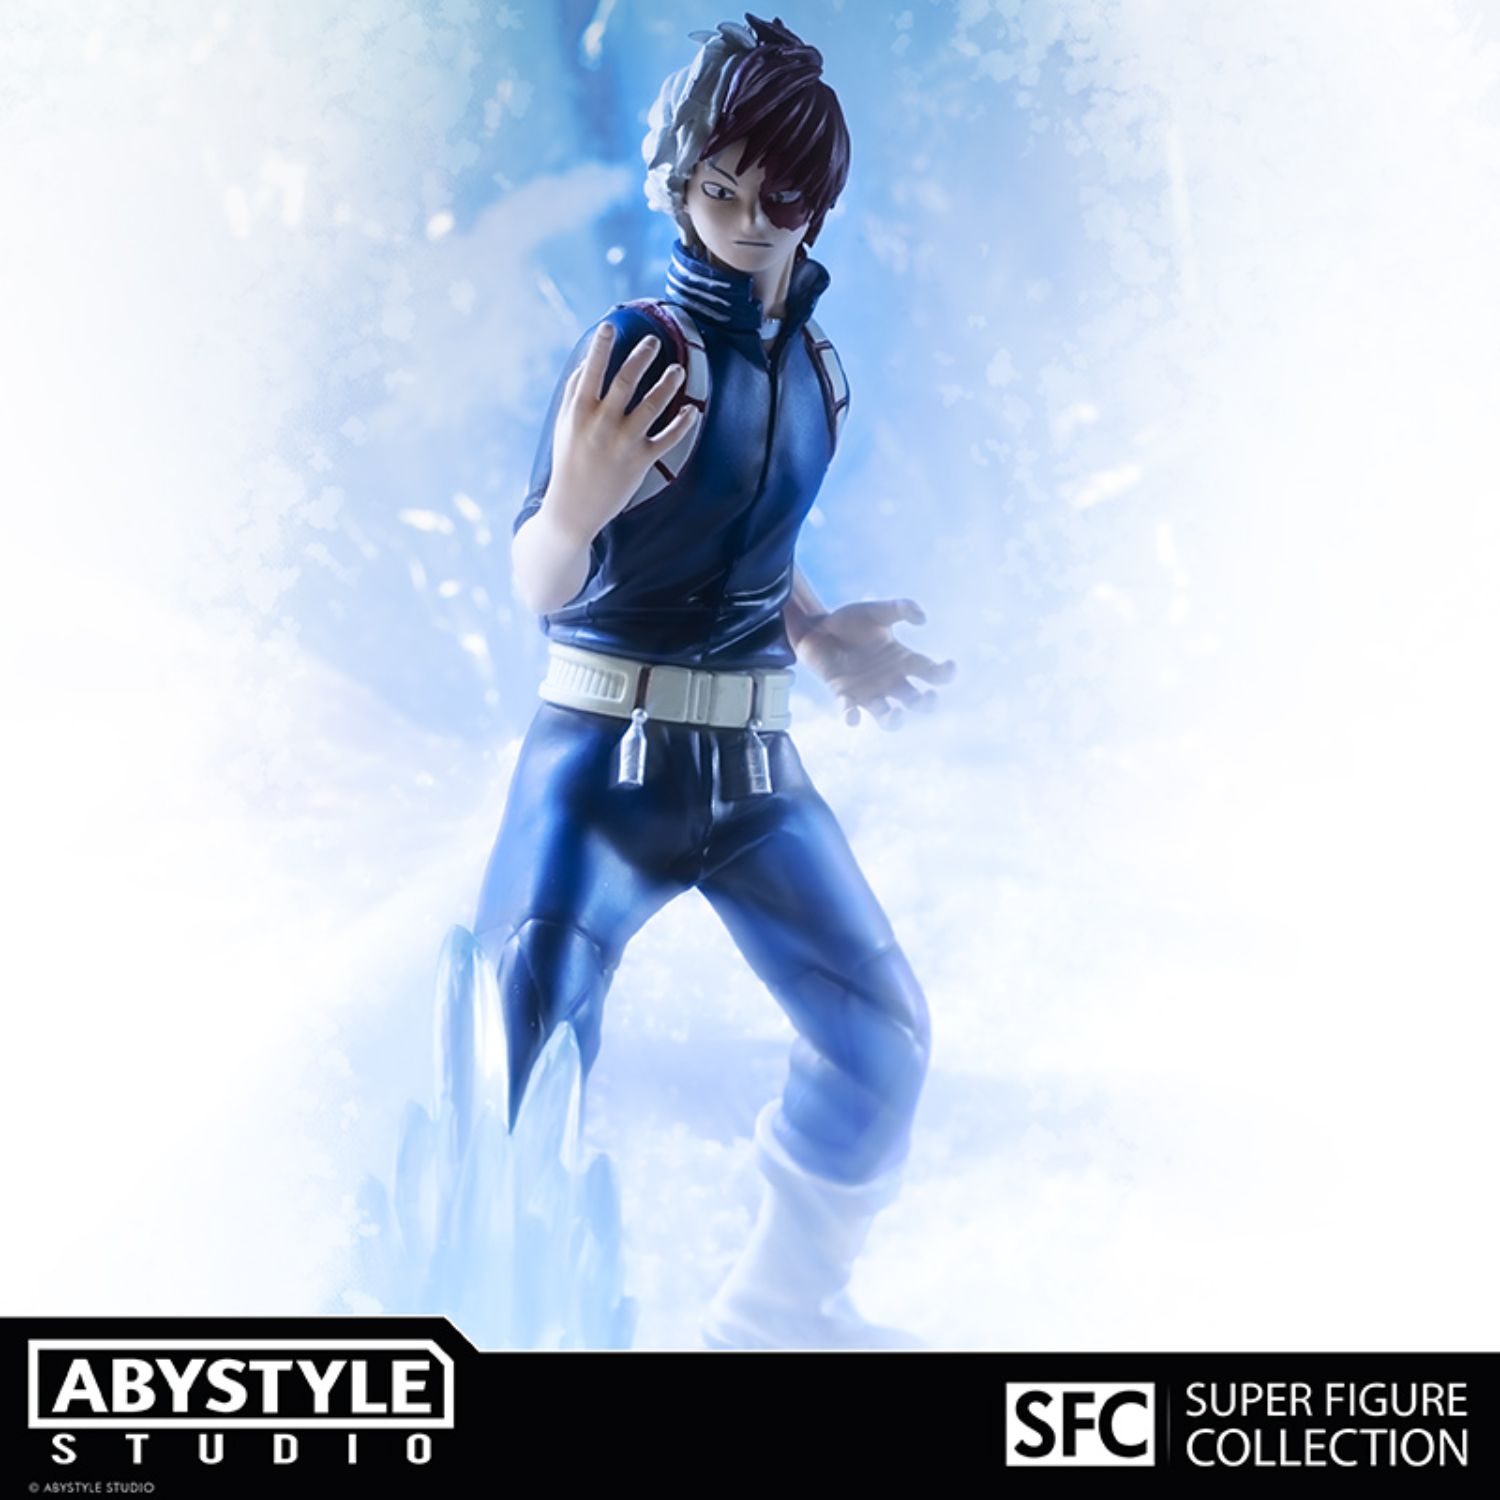 My Hero Academia - Izuku Midoriya - SFC - Super Figure Collection by AbyStyle  Studio action figure 01